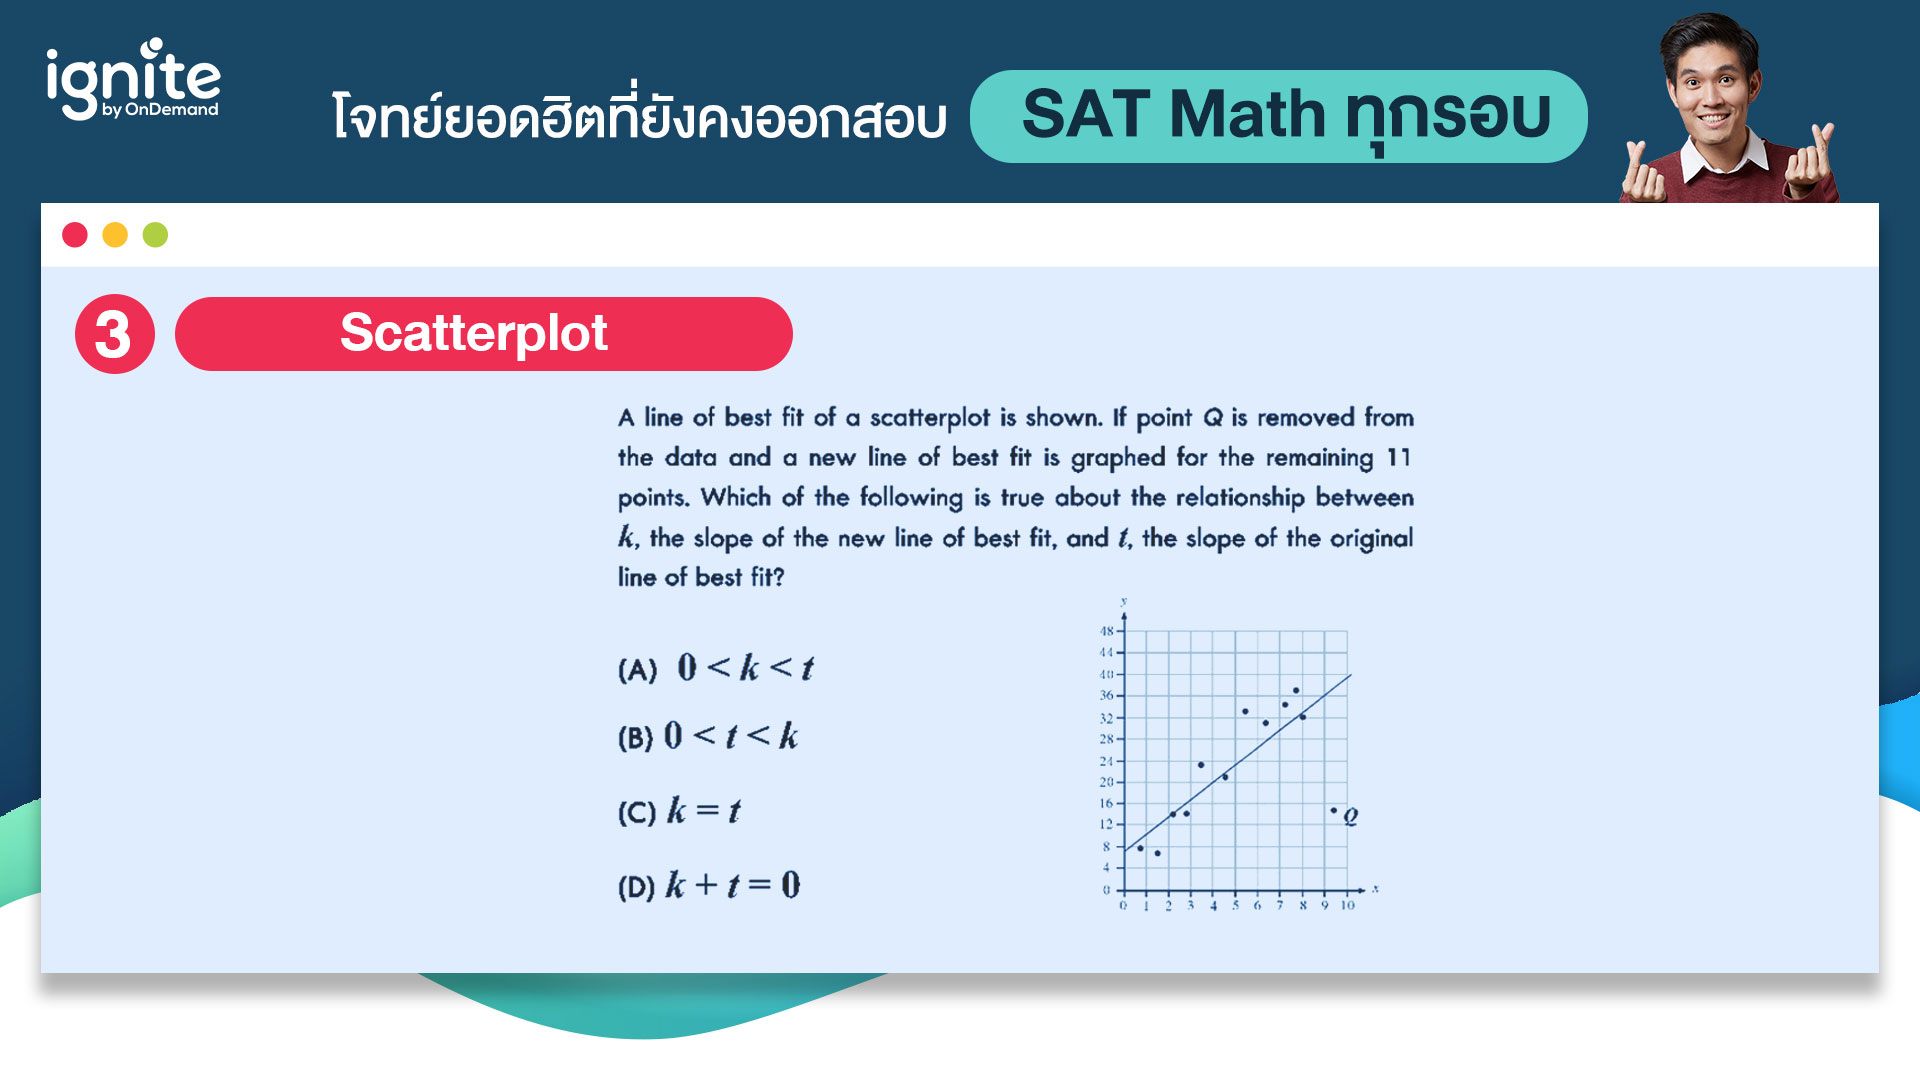 โจทย์ข้อสอบ - SAT Math - ที่ออกสอบทุกรอบ - Bigcover4